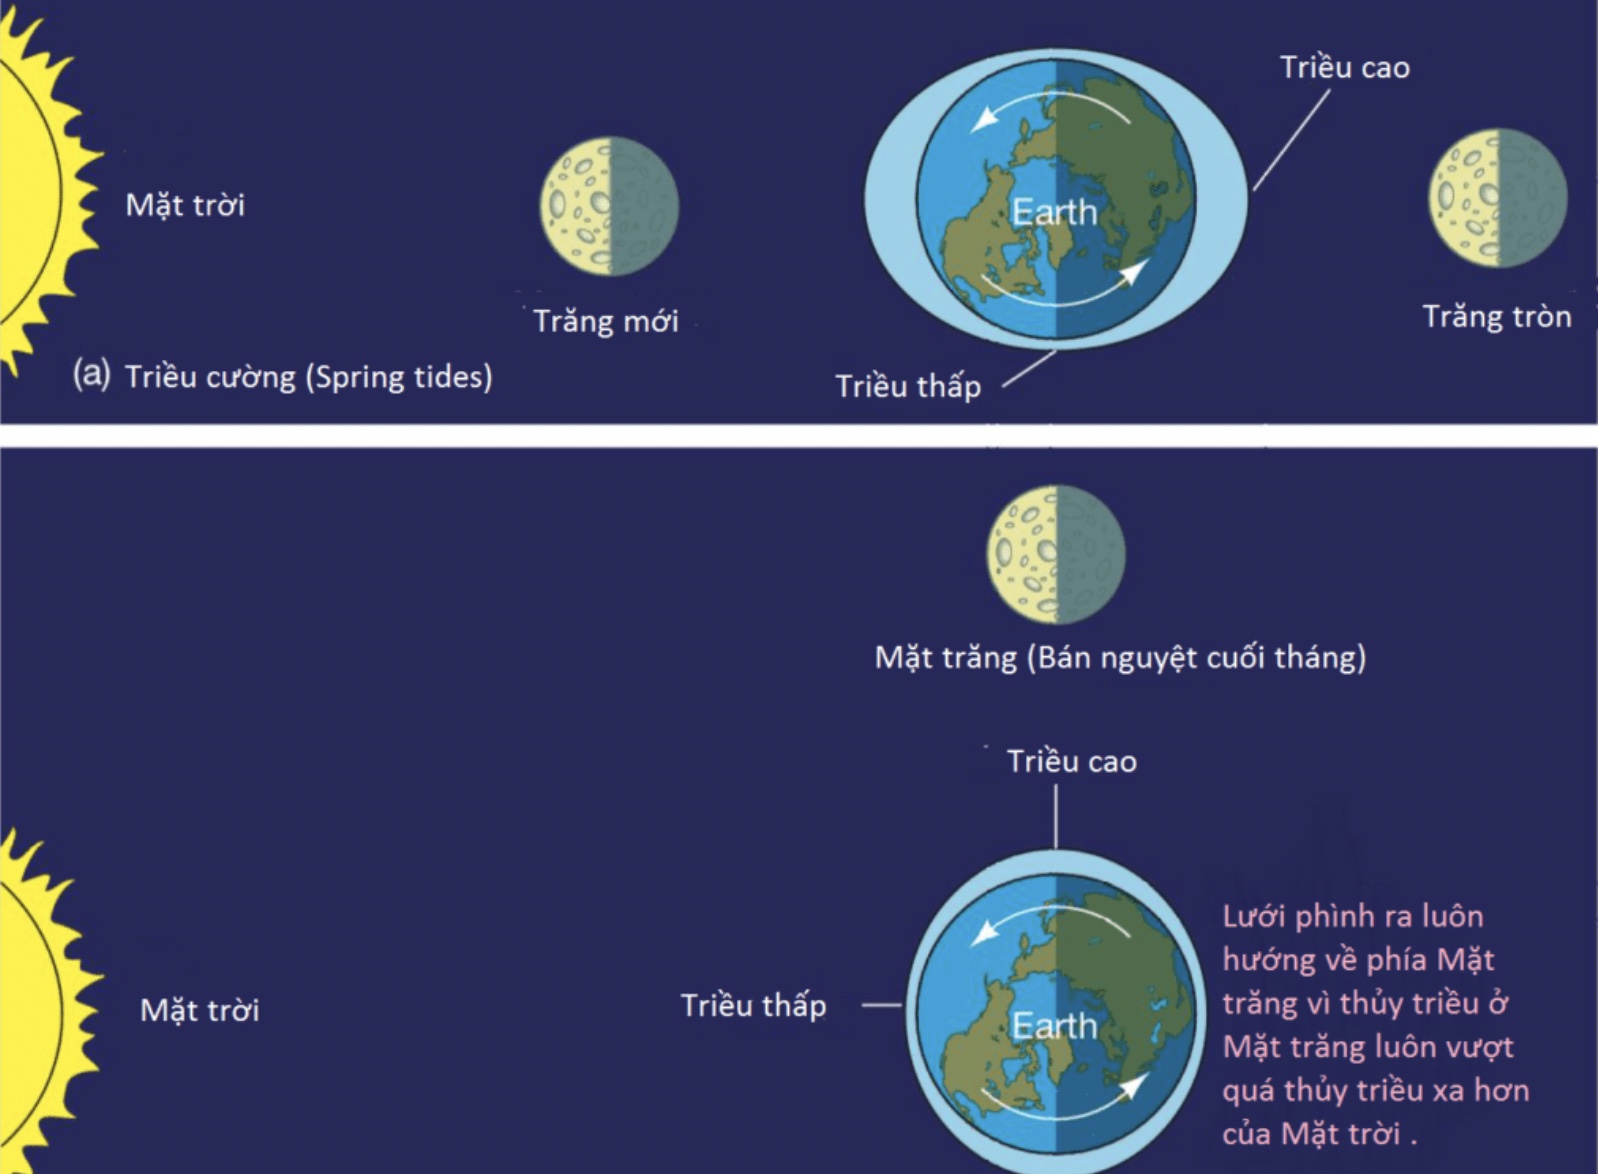 Hiện tượng thuỷ triều do lực hút của măt trăng và mặt trời